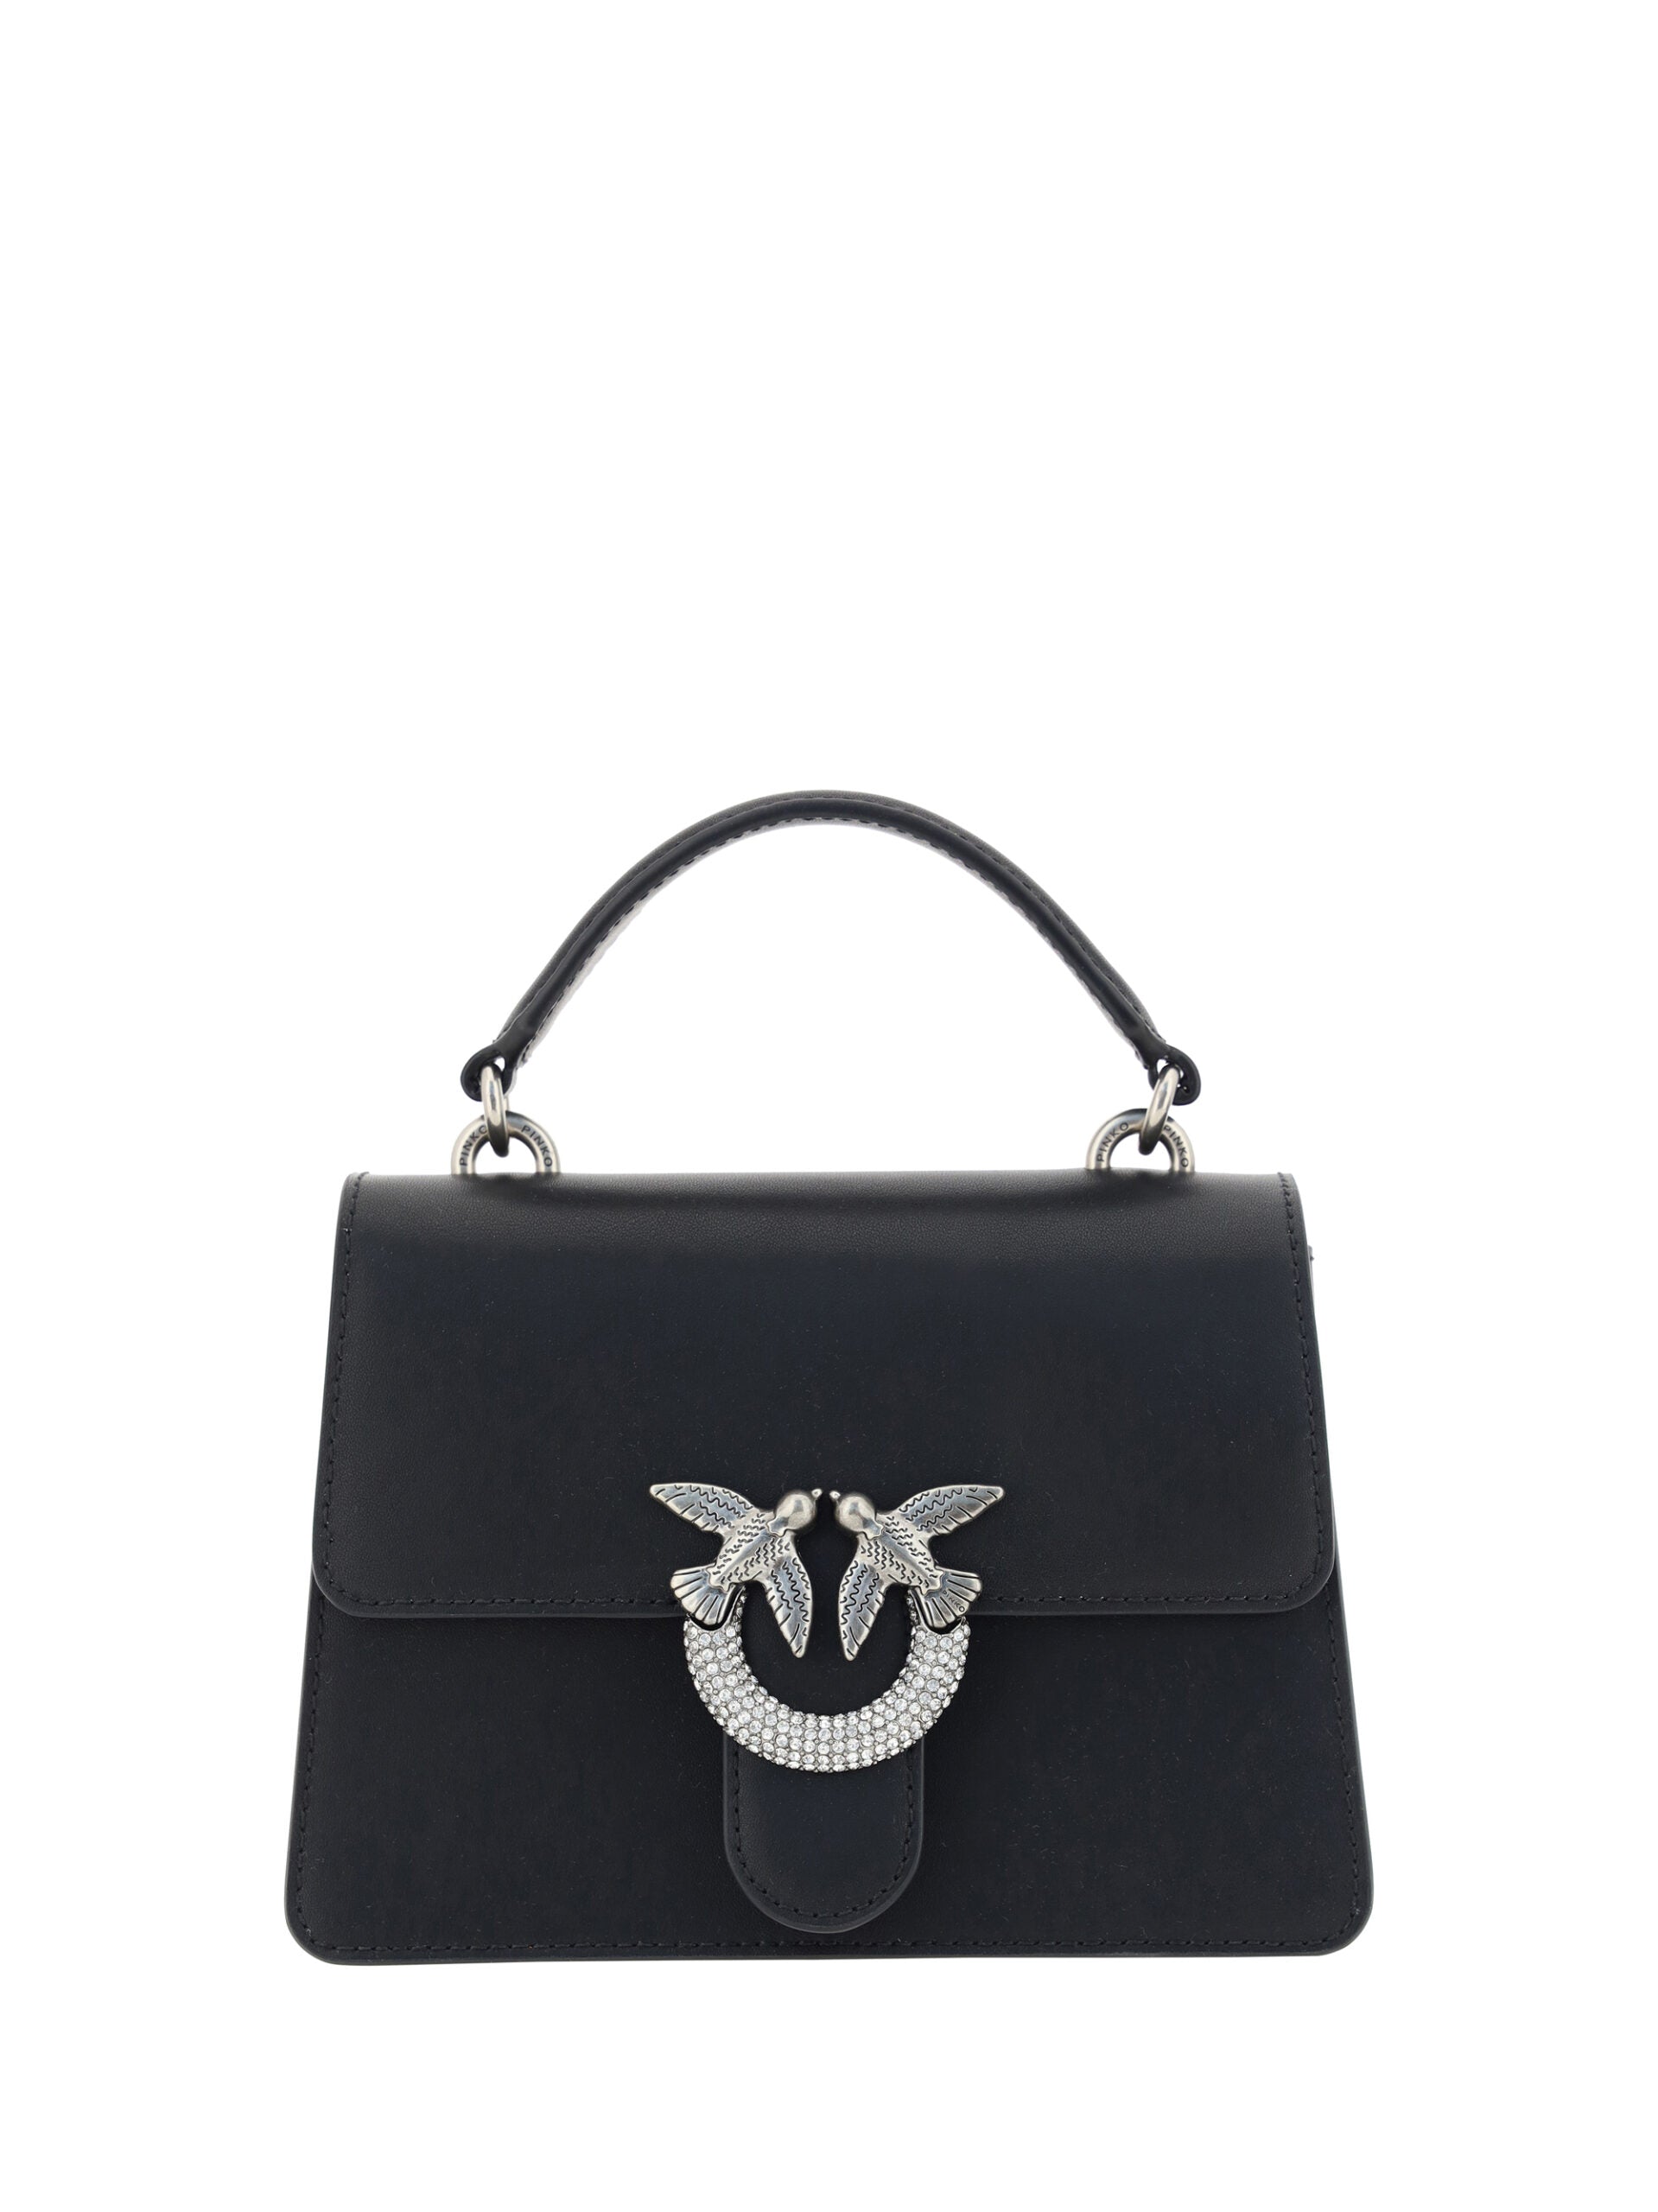 Elegant Black Calfskin Shoulder Handbag